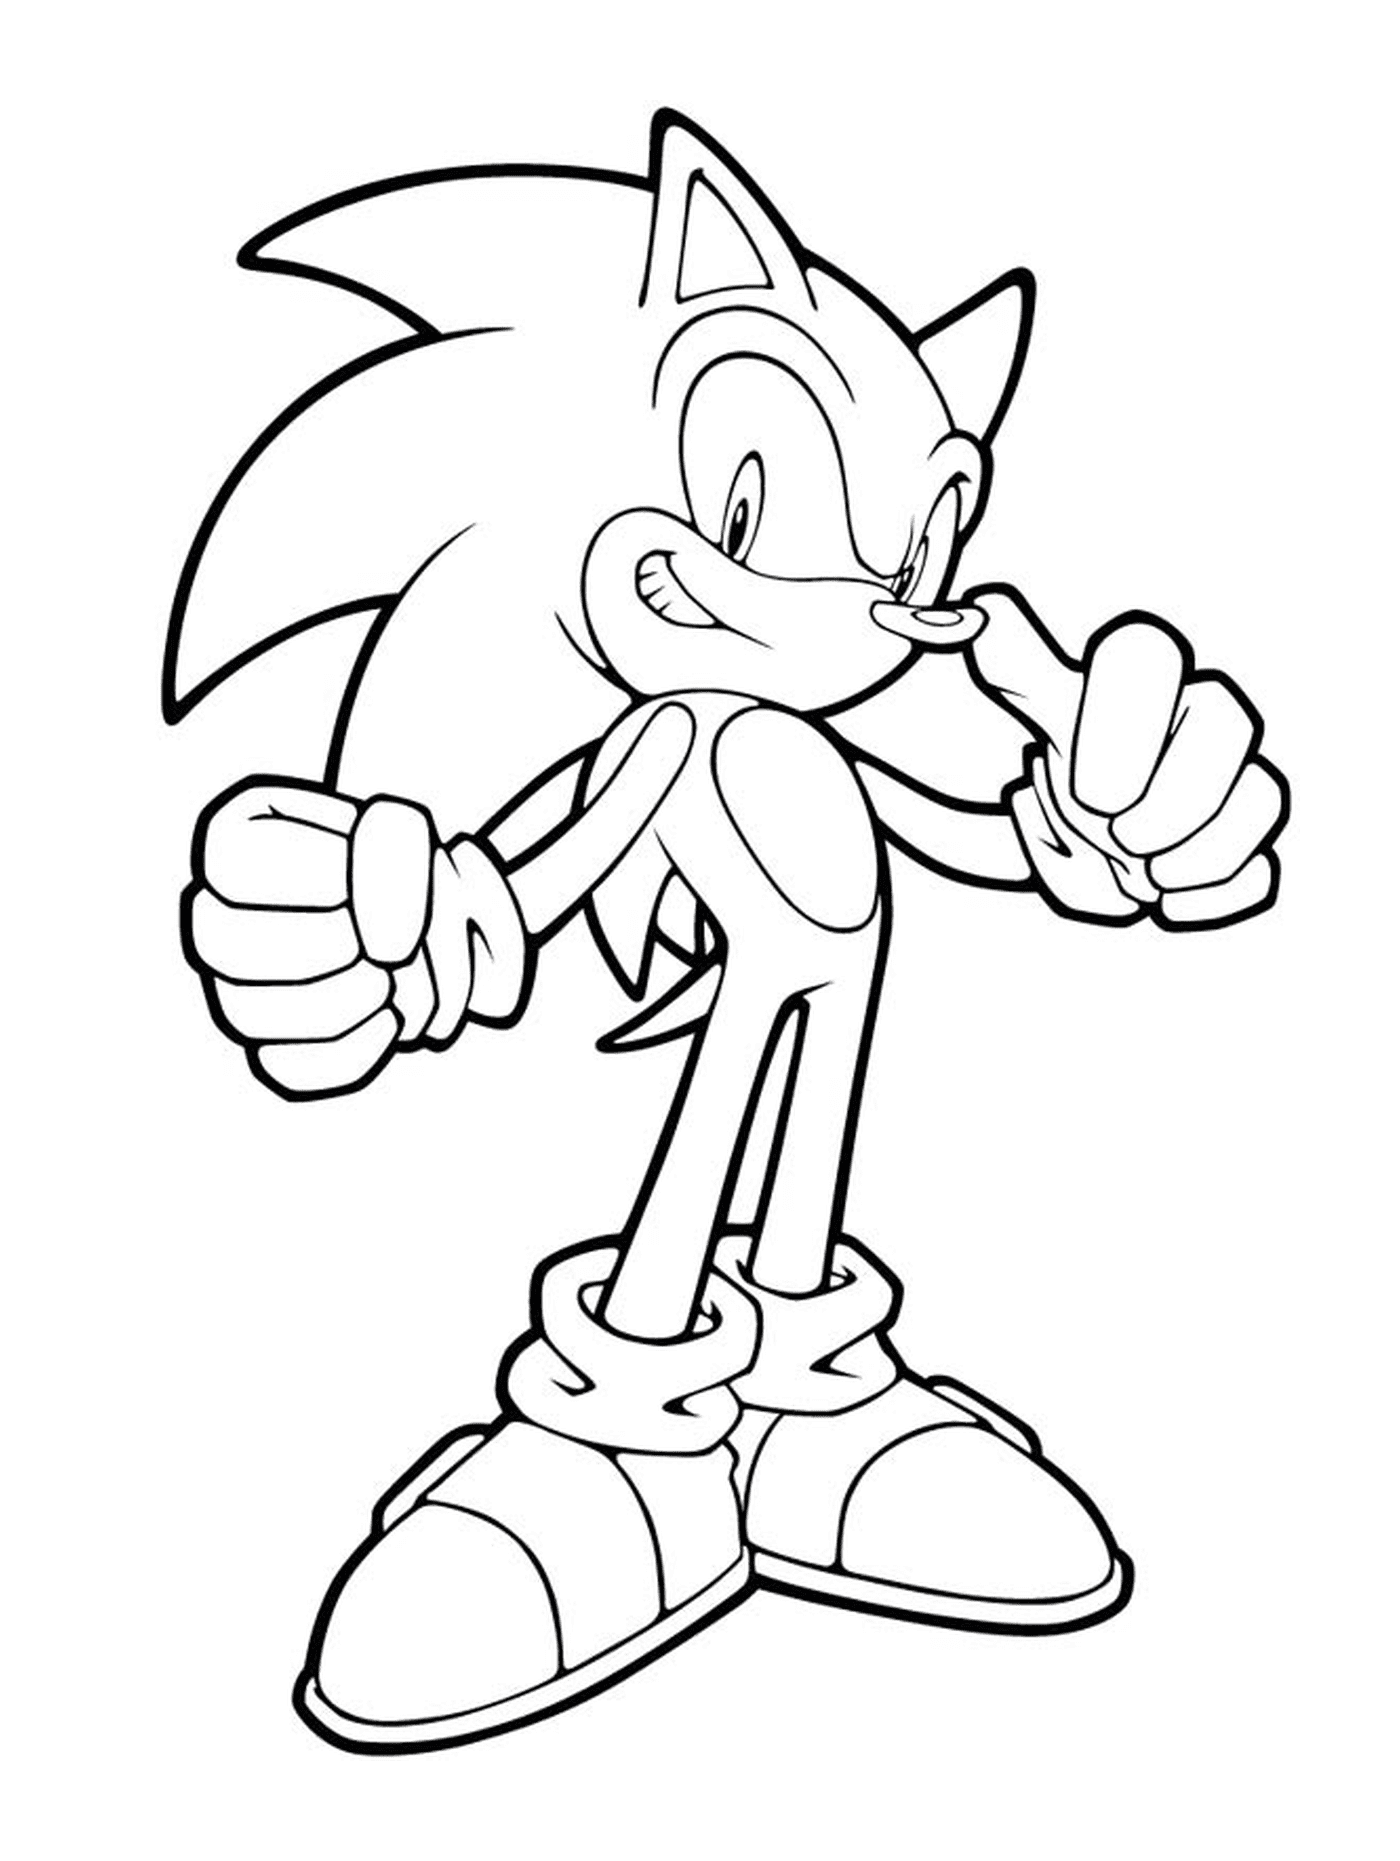  Sonic em uma postura ousada 